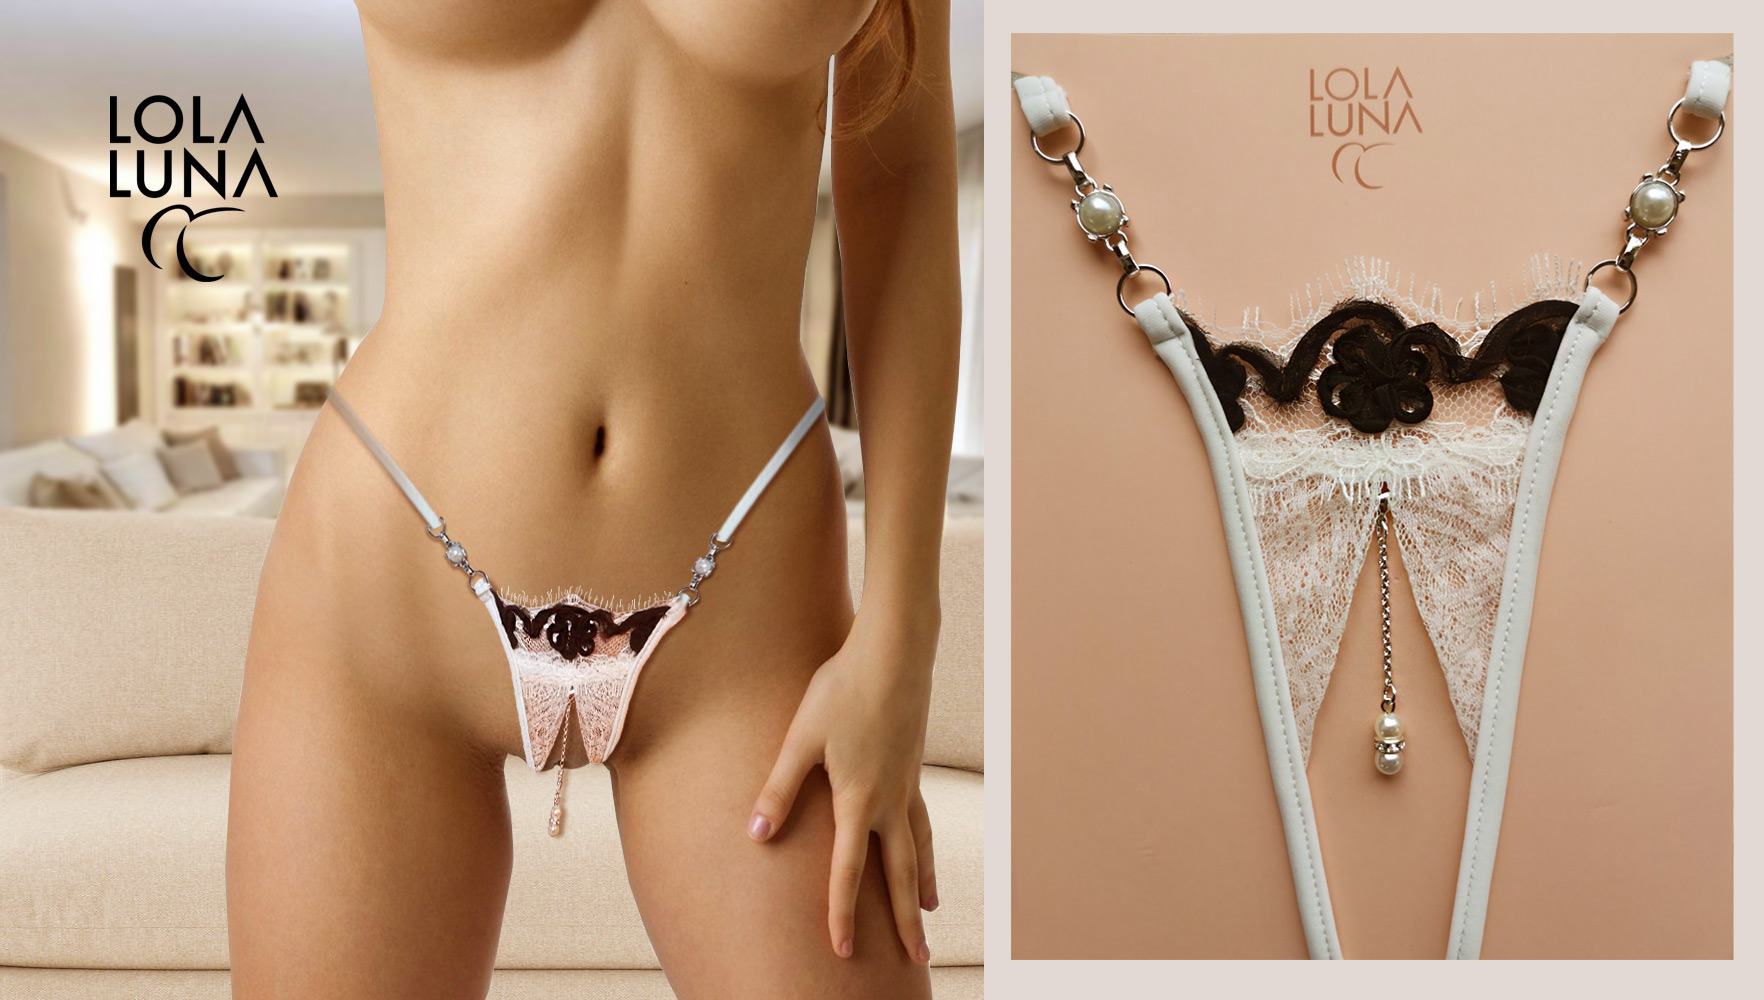 lola luna lingerie - designedbydianna.com.